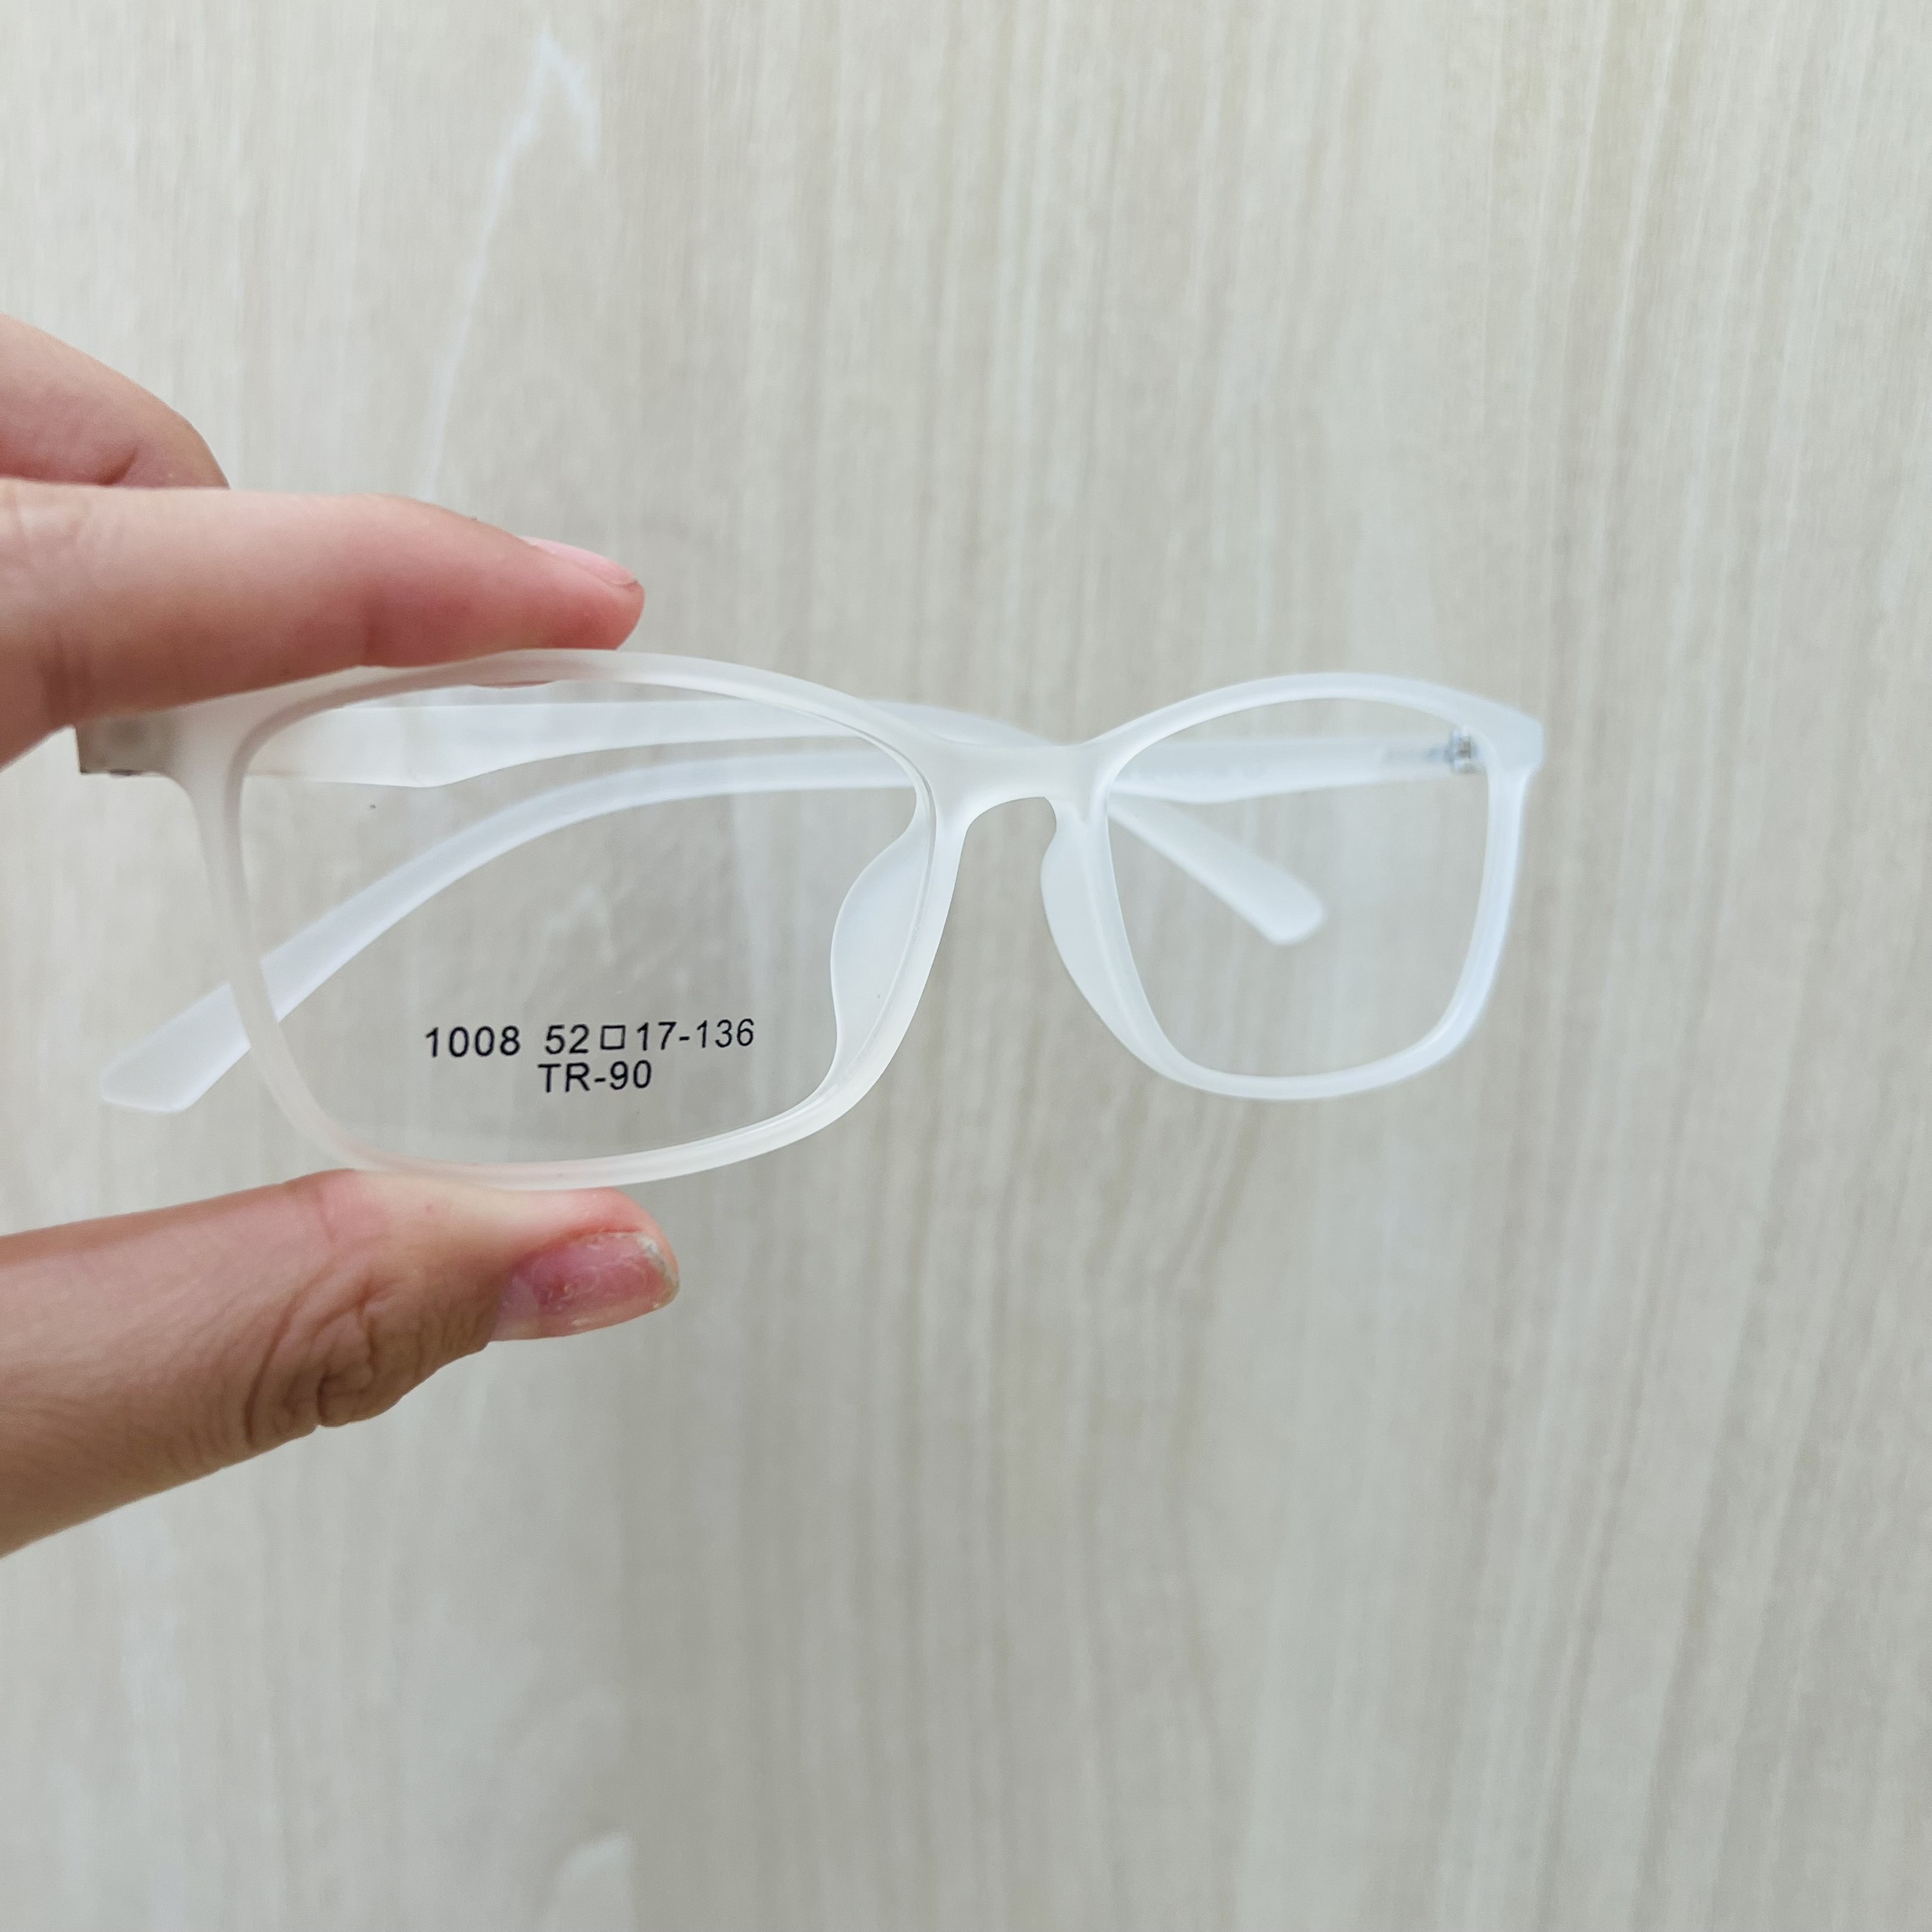 Gọng kính nhựa tr90 siêu nhẹ siêu bền thời trang OURESS - 1008